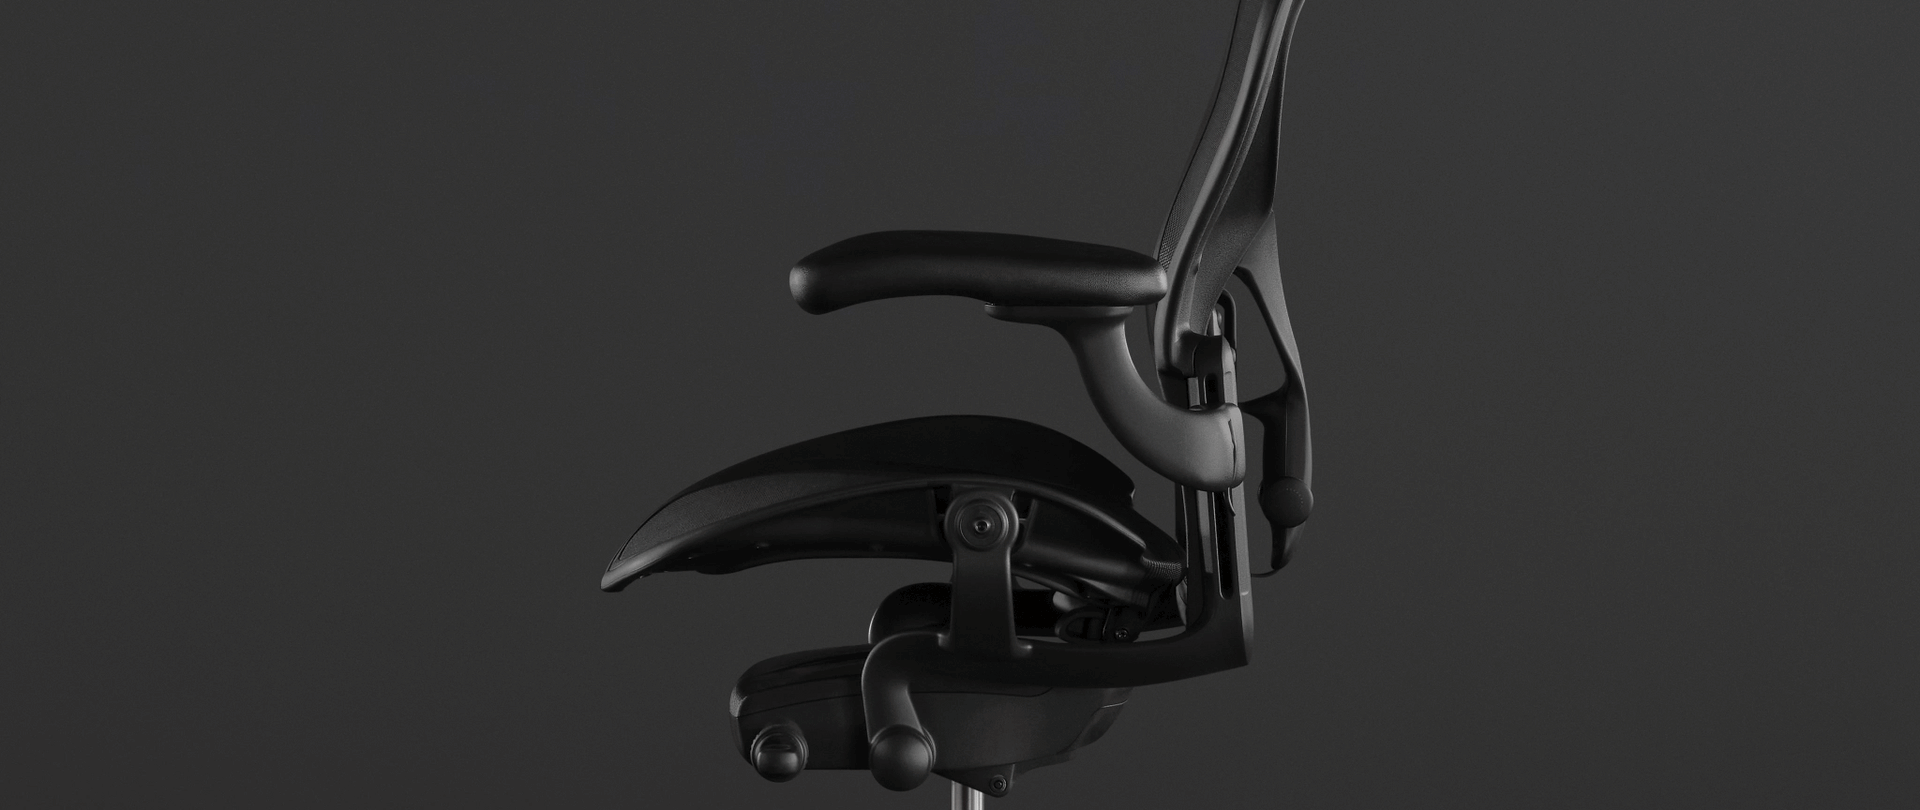 ブラックのアーロンチェアの写真上に描いたアニメーションで、シートの前角が姿勢の調節し、楽に脊椎をサポートする様子を表現しています。